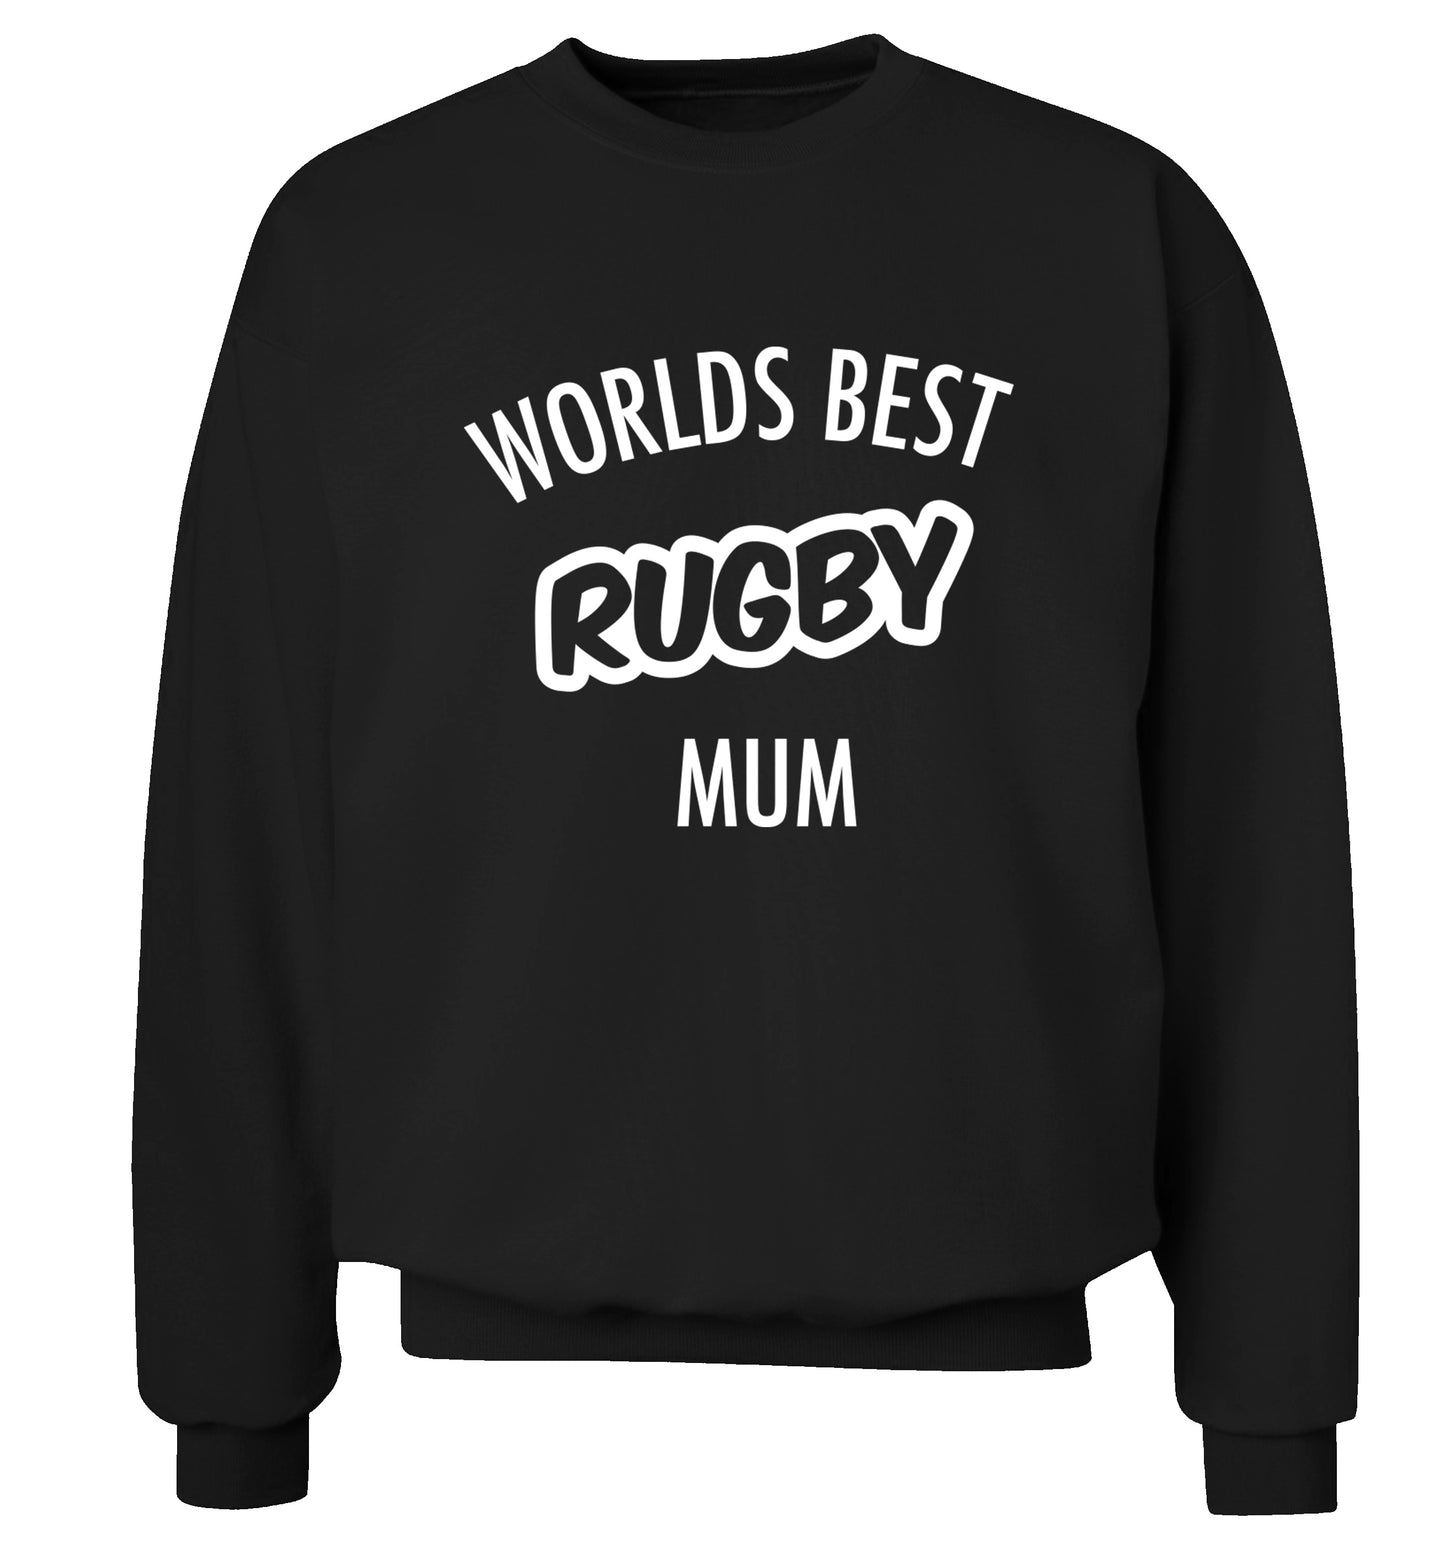 Worlds best rugby mum Adult's unisex black Sweater 2XL